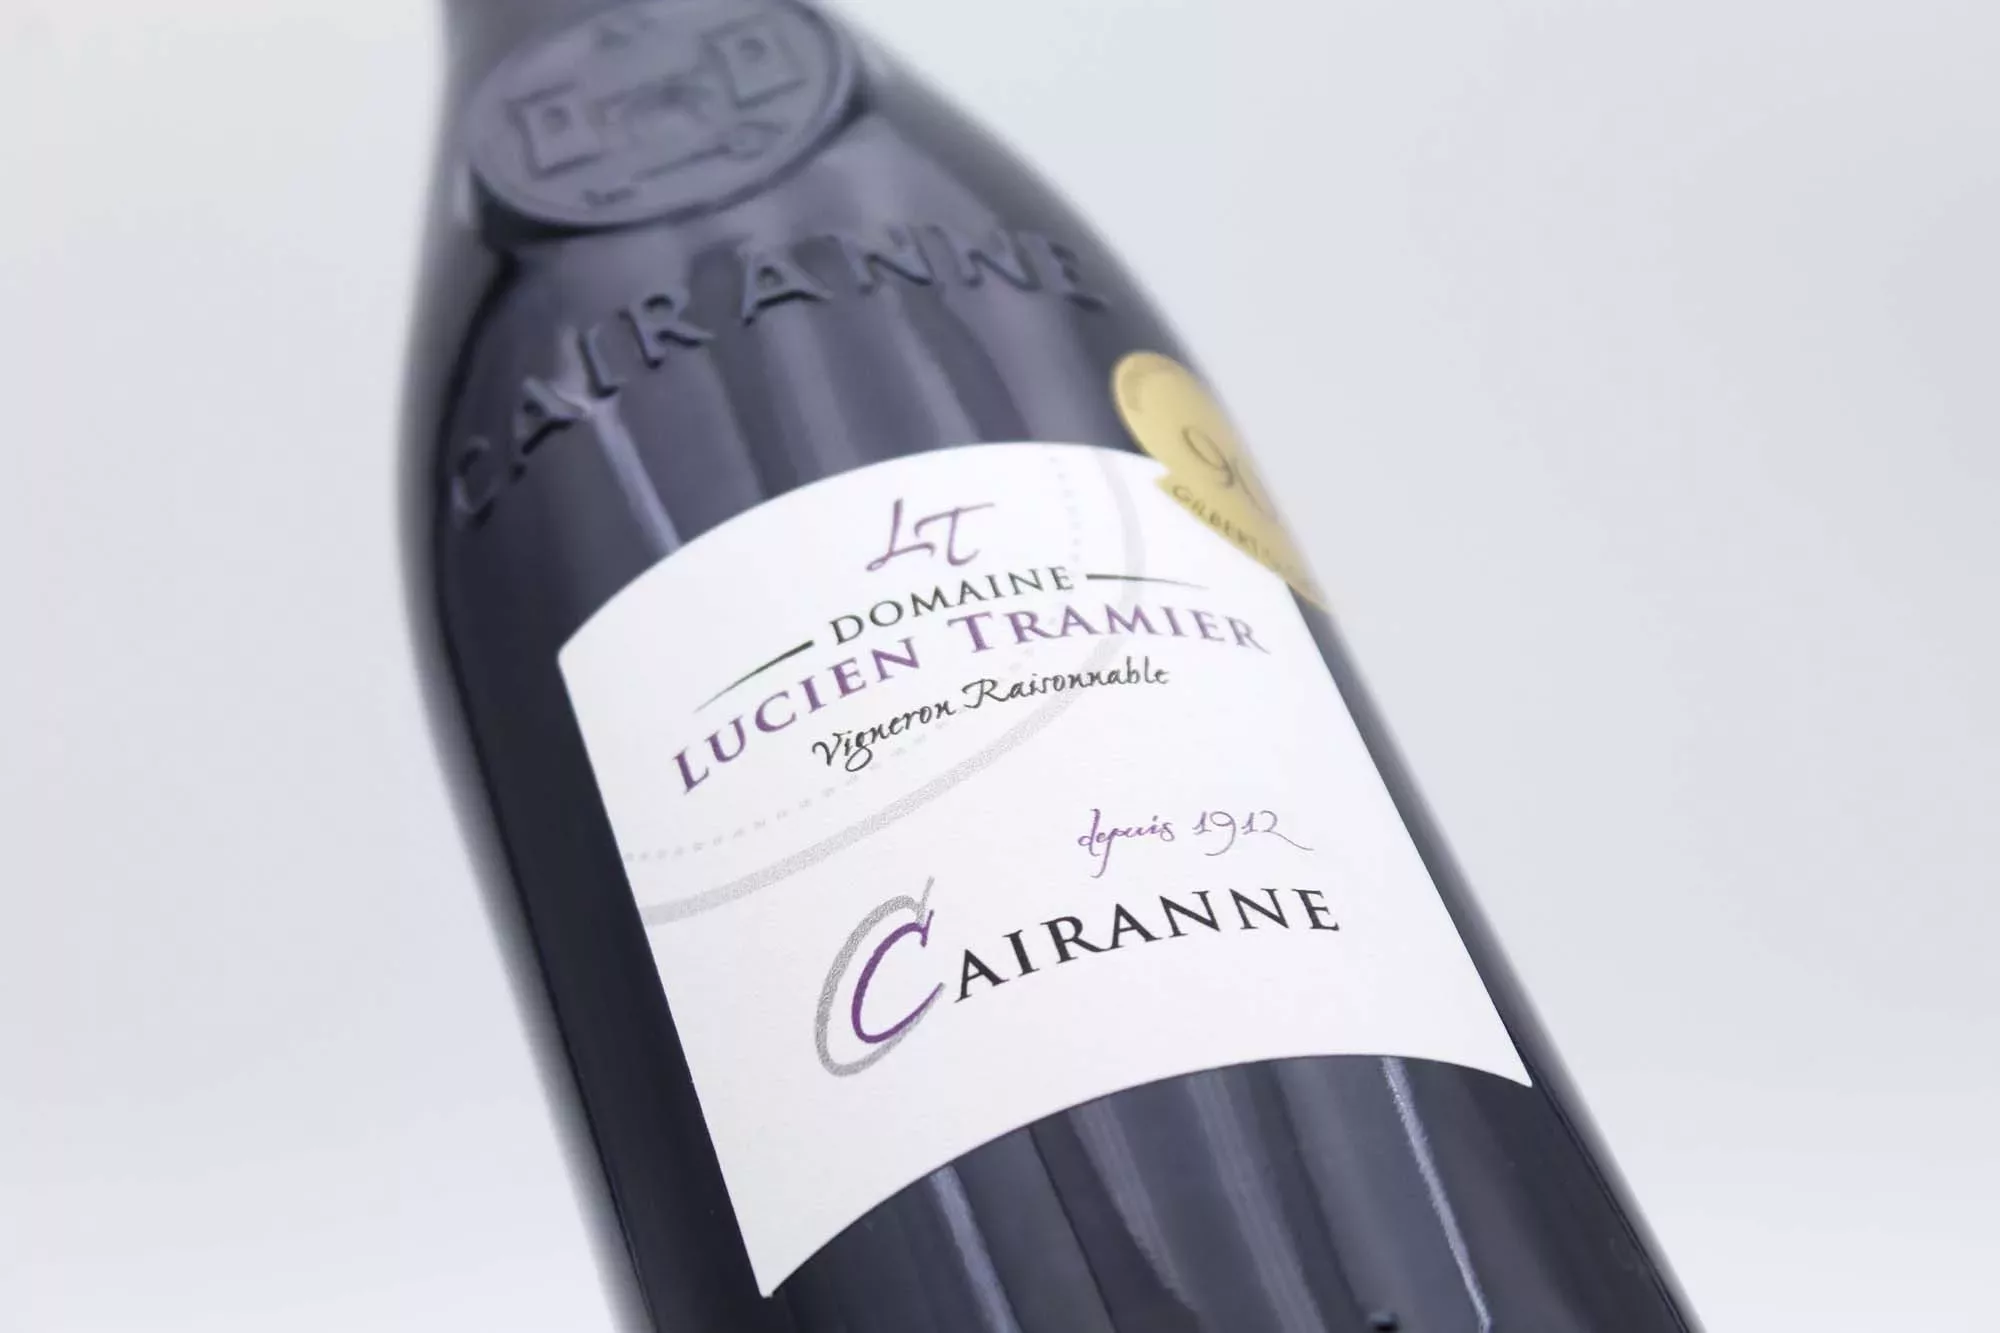 Coffret Prestige Vins de Bordeaux - Feel Rouge